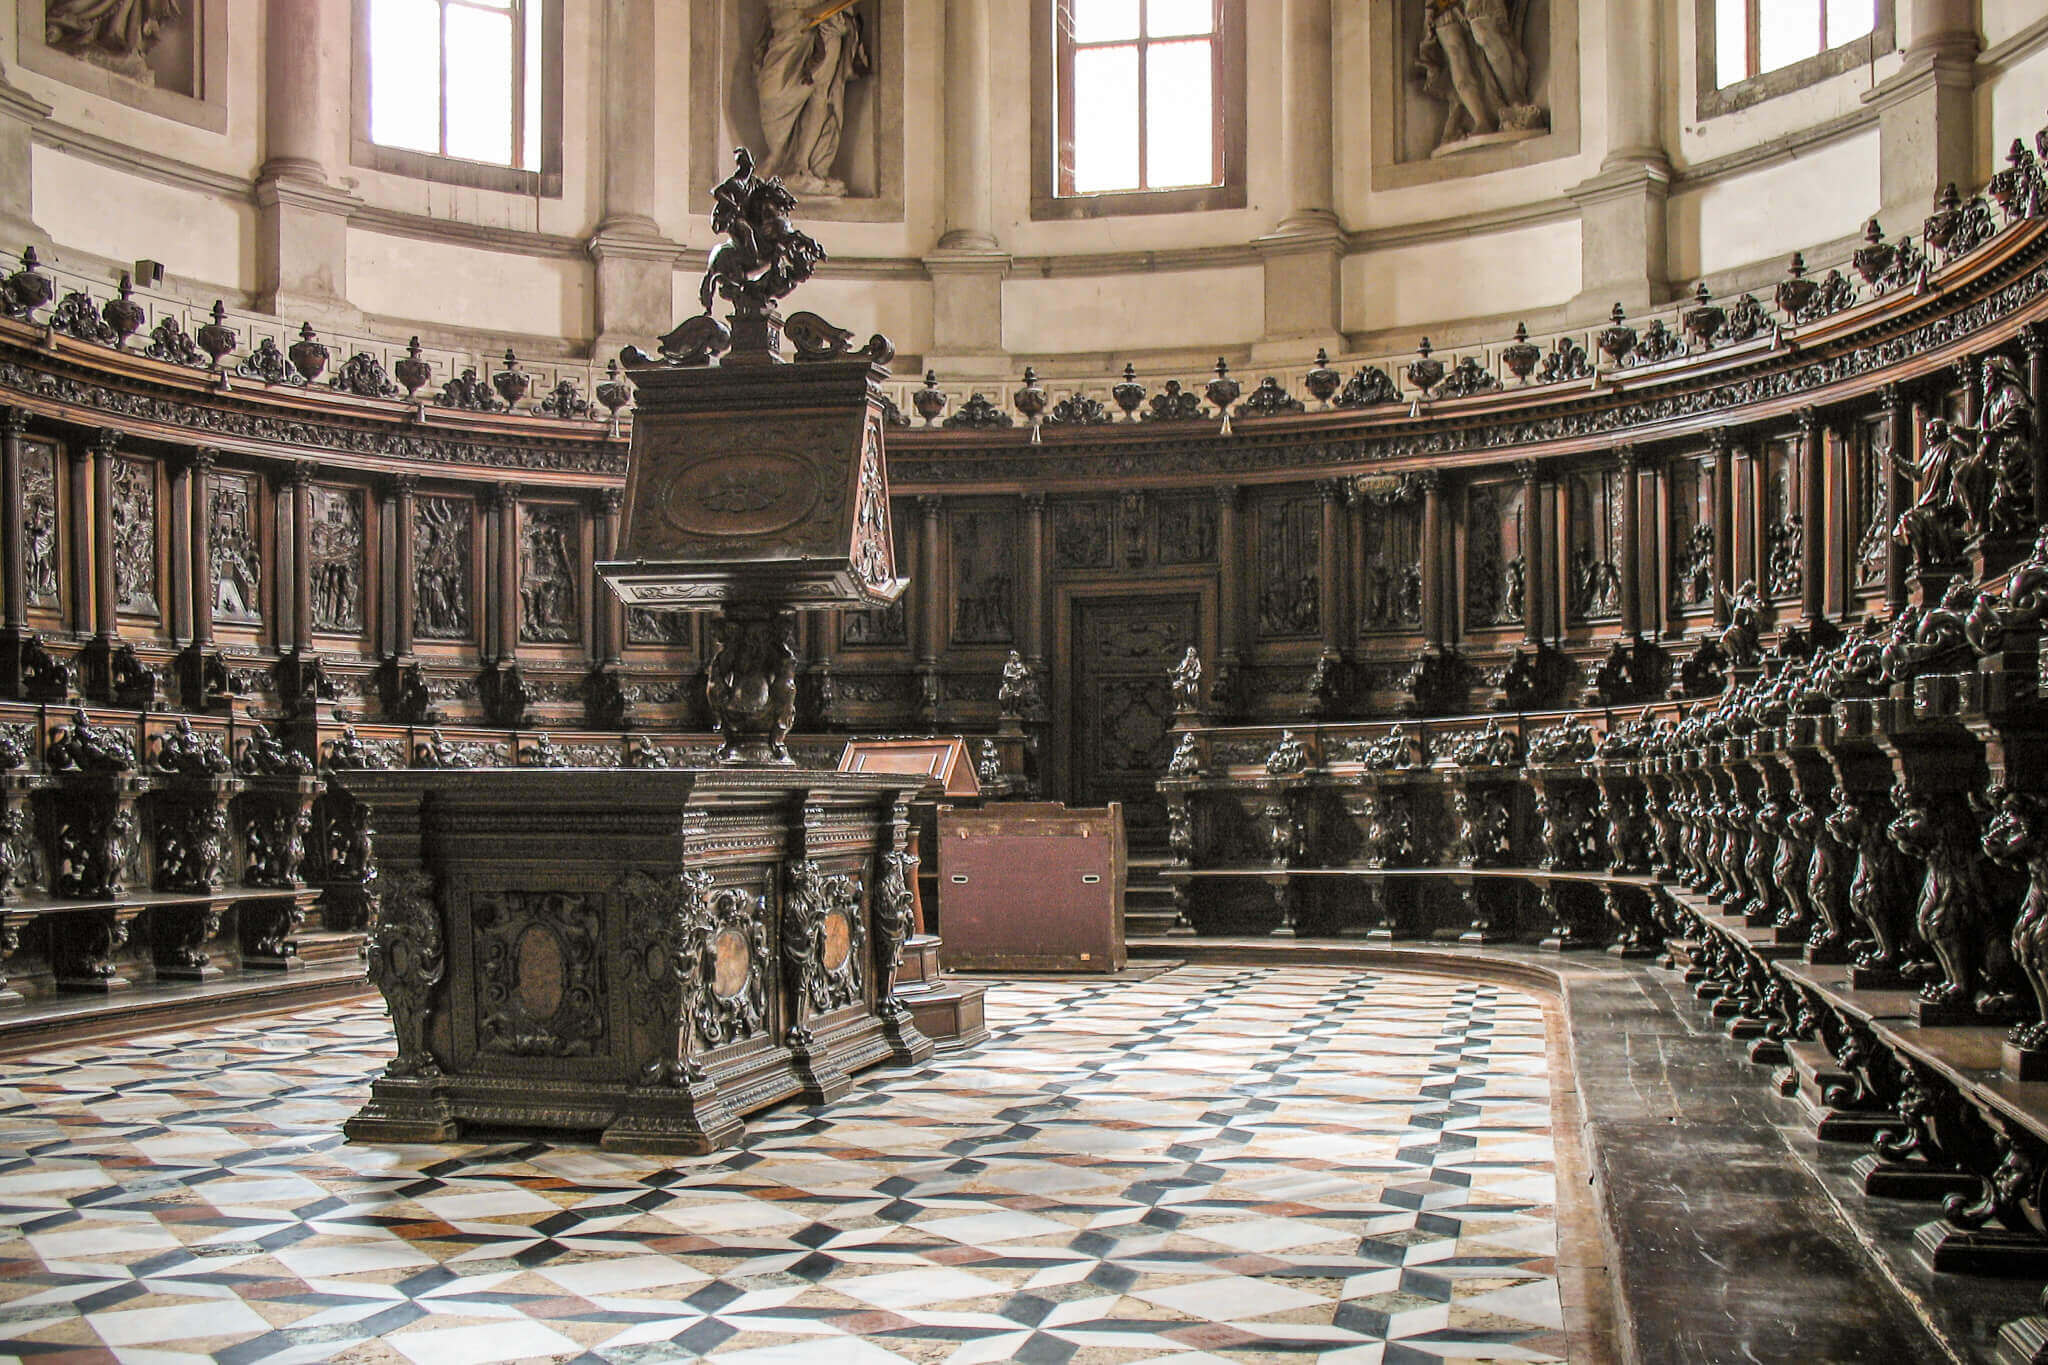 The ornate choir at San Giorgio Maggiore in Venice